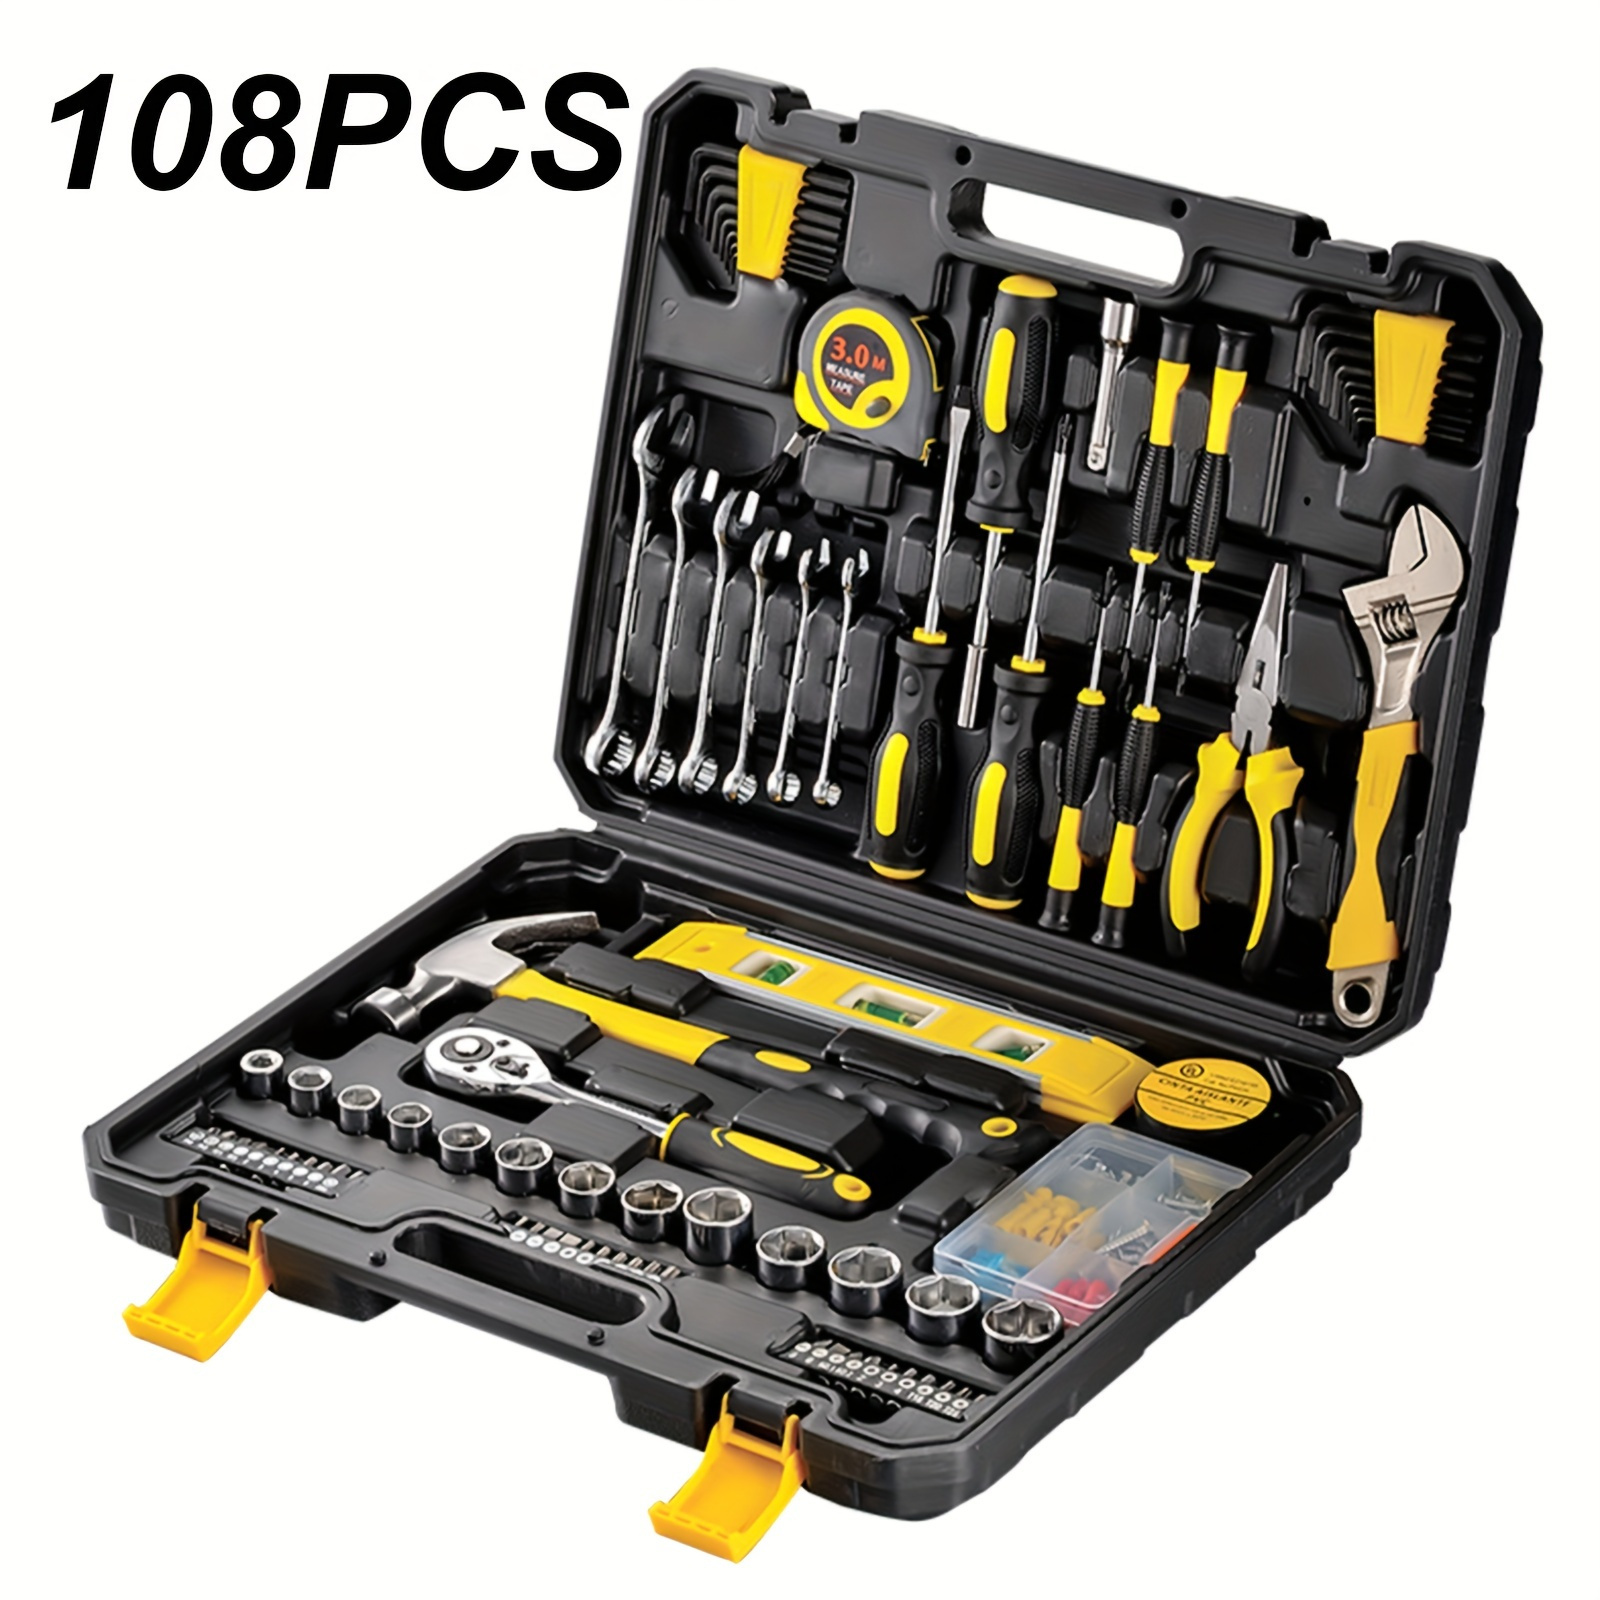 

108pcs/set Complete Manual Tool Set For Home And Car Repair, Car Repair Kit Toolbox